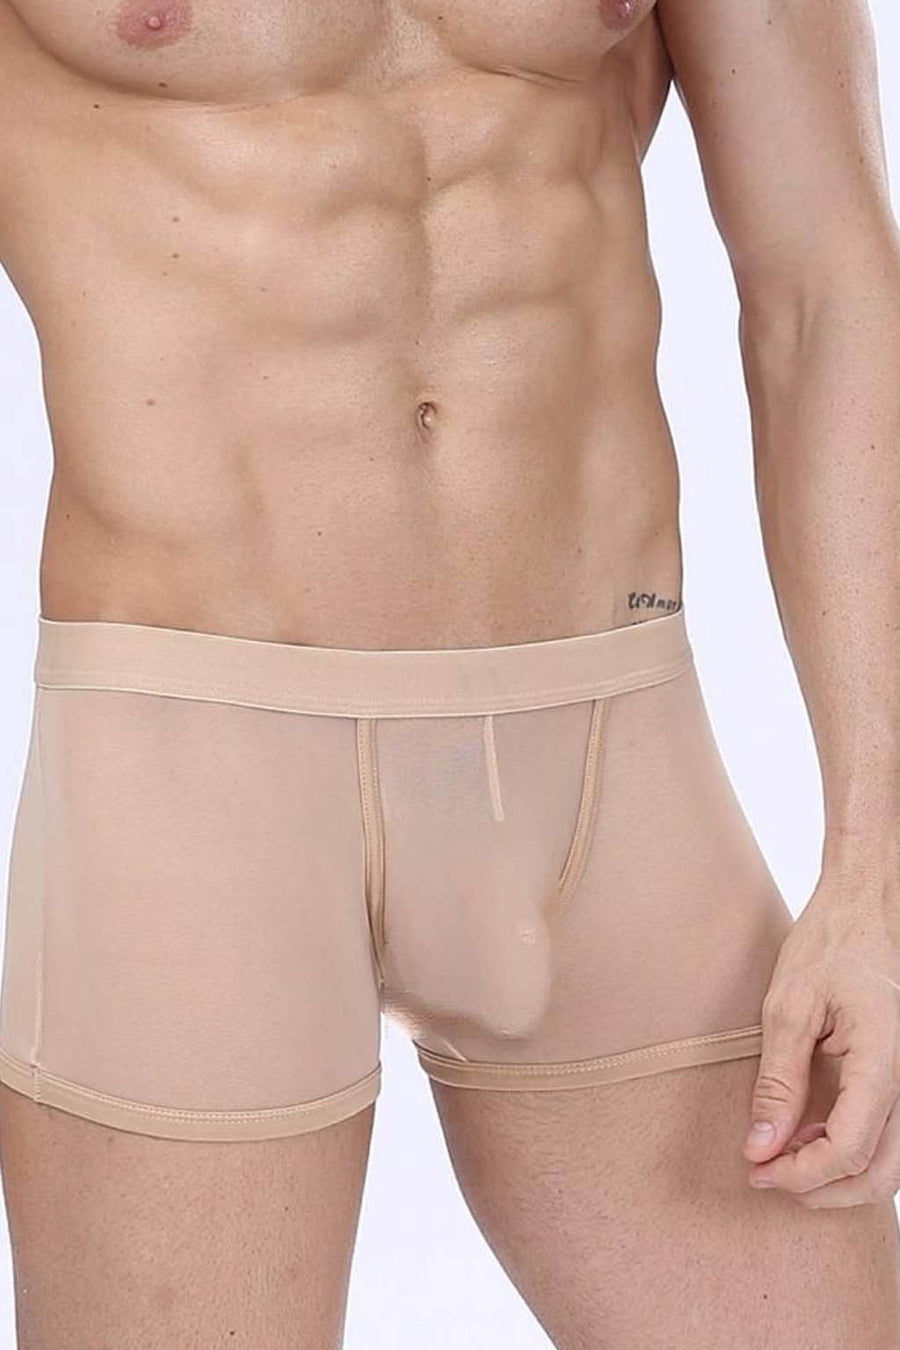 Manview Mens Sheer Net Boxer Lowrise Pouch Underwear – Bodywear for Men